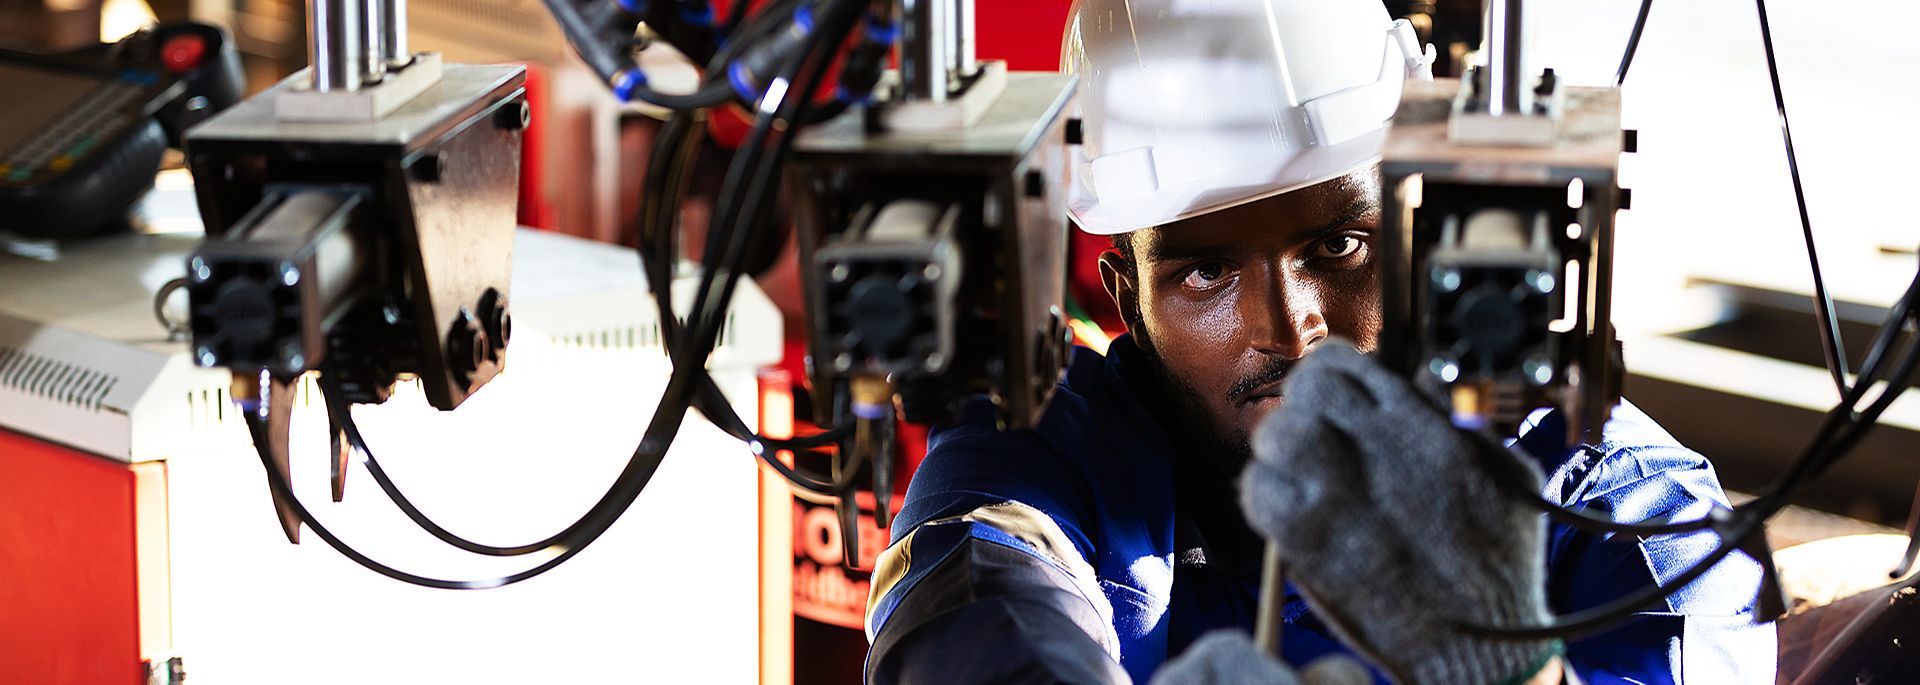 Afrikanischer Ingenieur überprüft eine Anlage in einer Maschinenbaufabrik in Afrika.ft und repariert